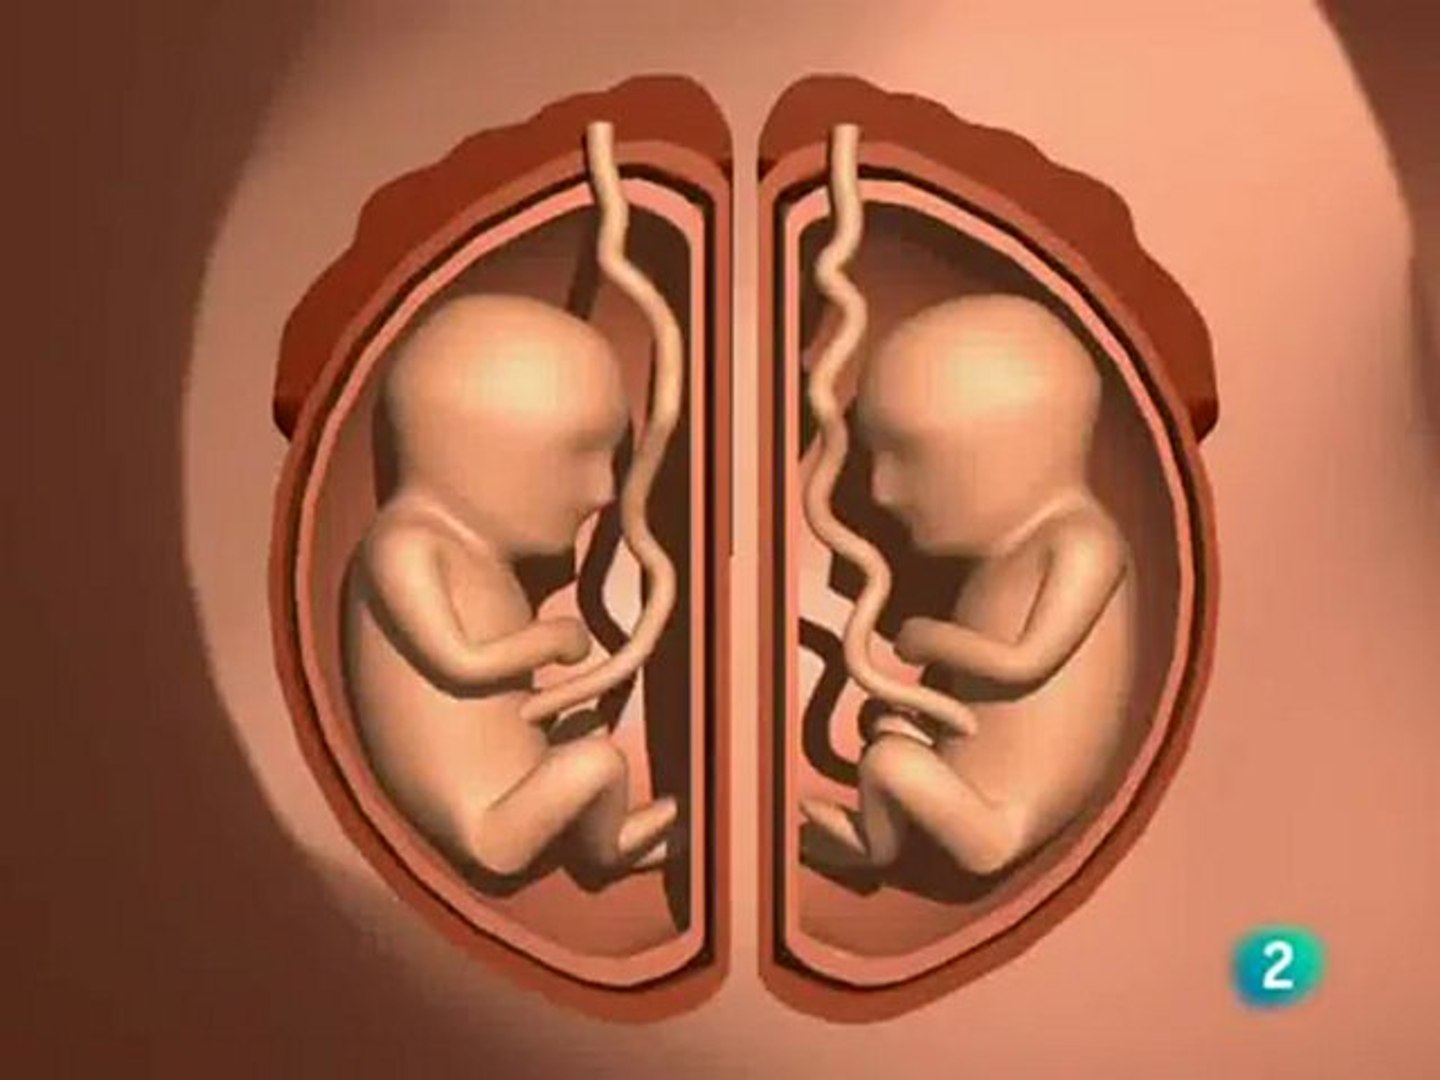 Separacion gemelar: Placenta y cordon umbilical - Vídeo Dailymotion